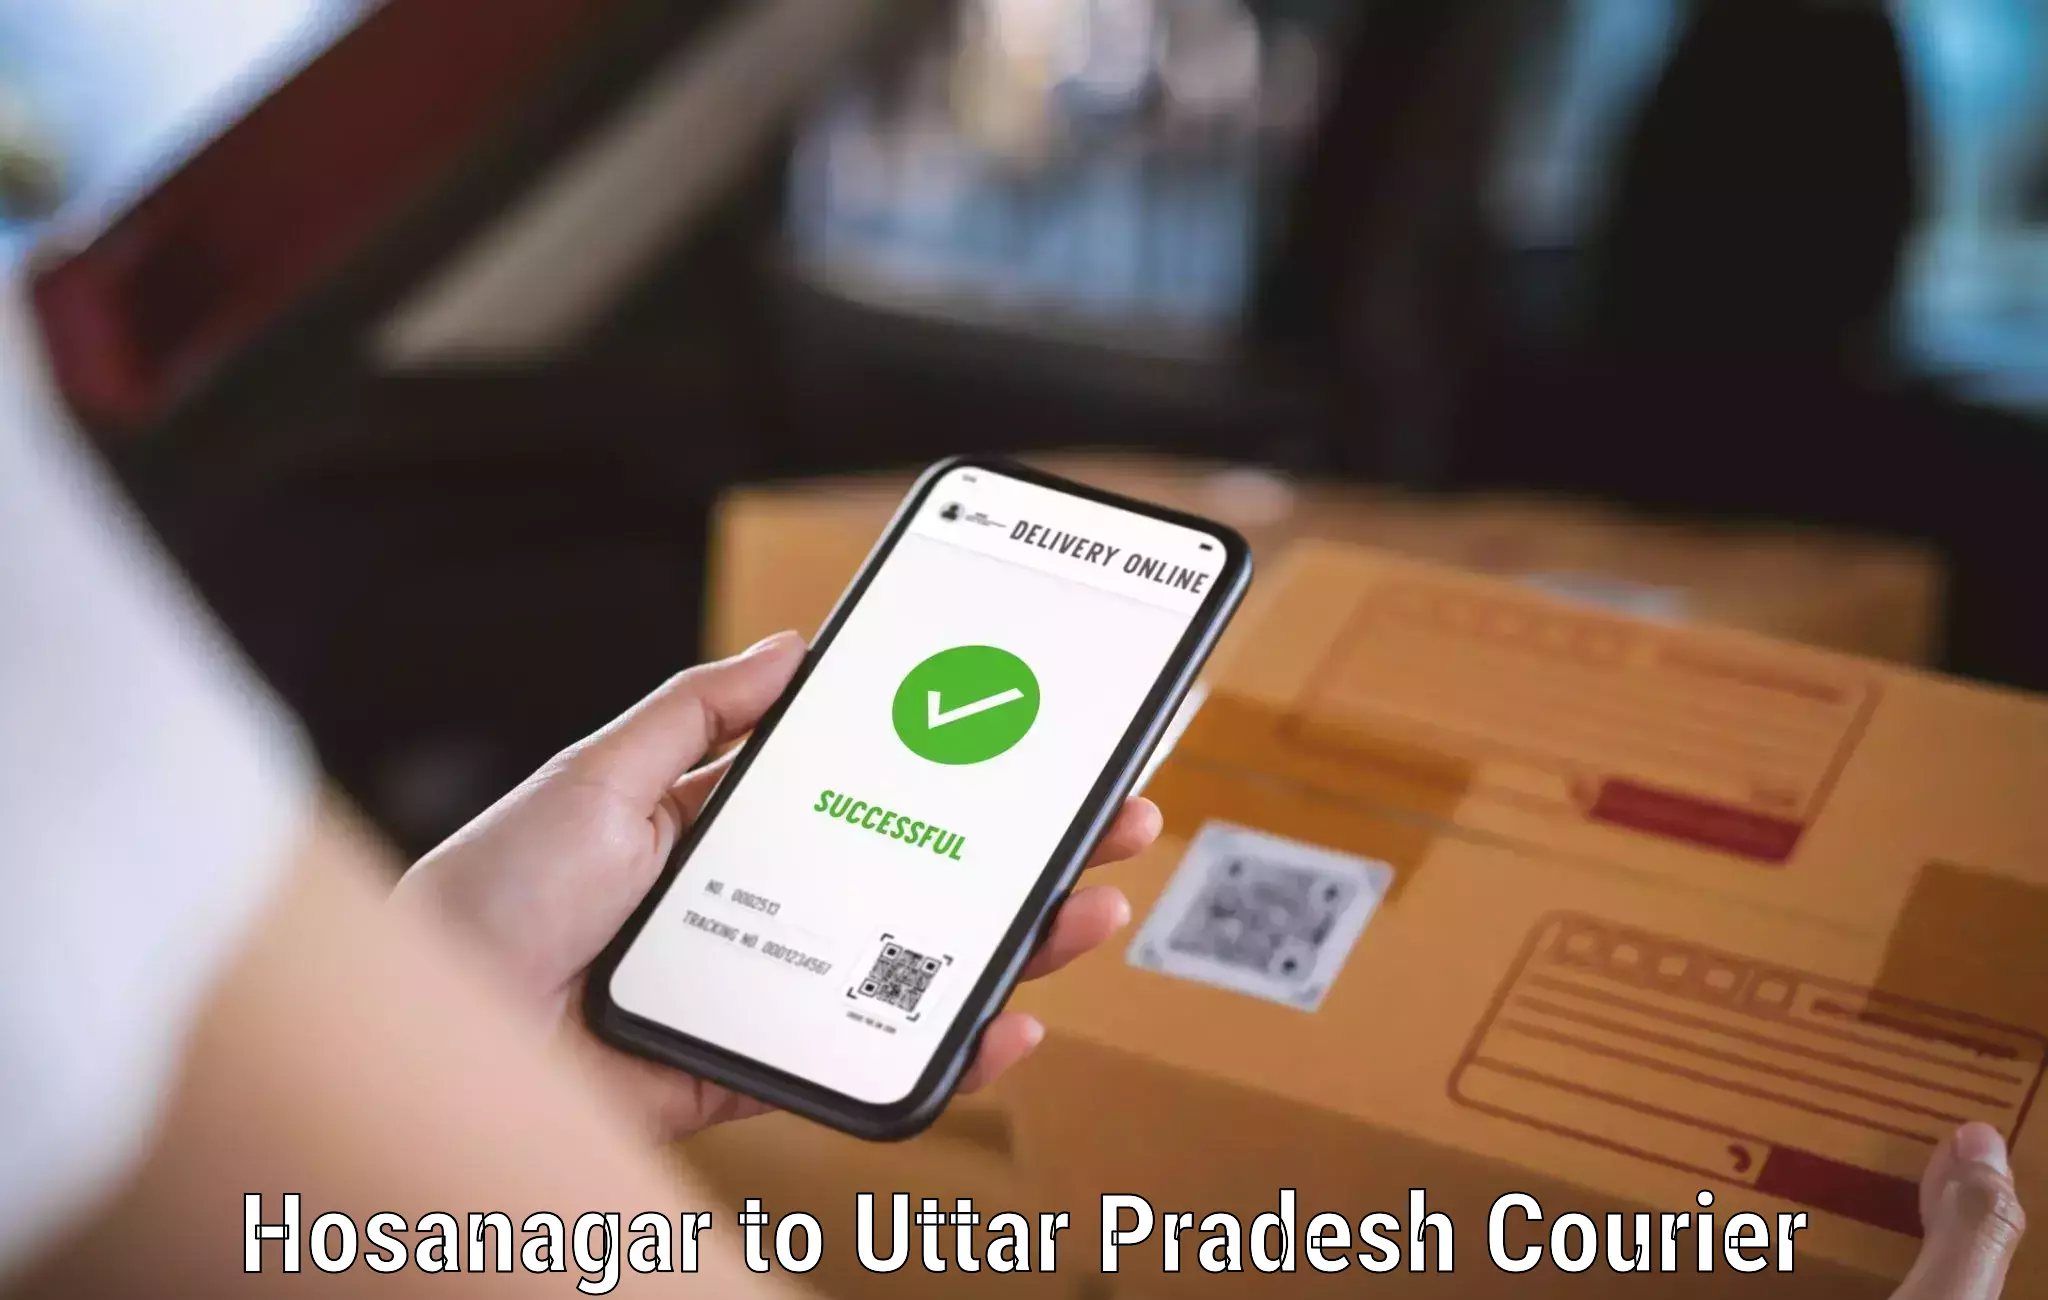 Easy return solutions Hosanagar to Uttar Pradesh